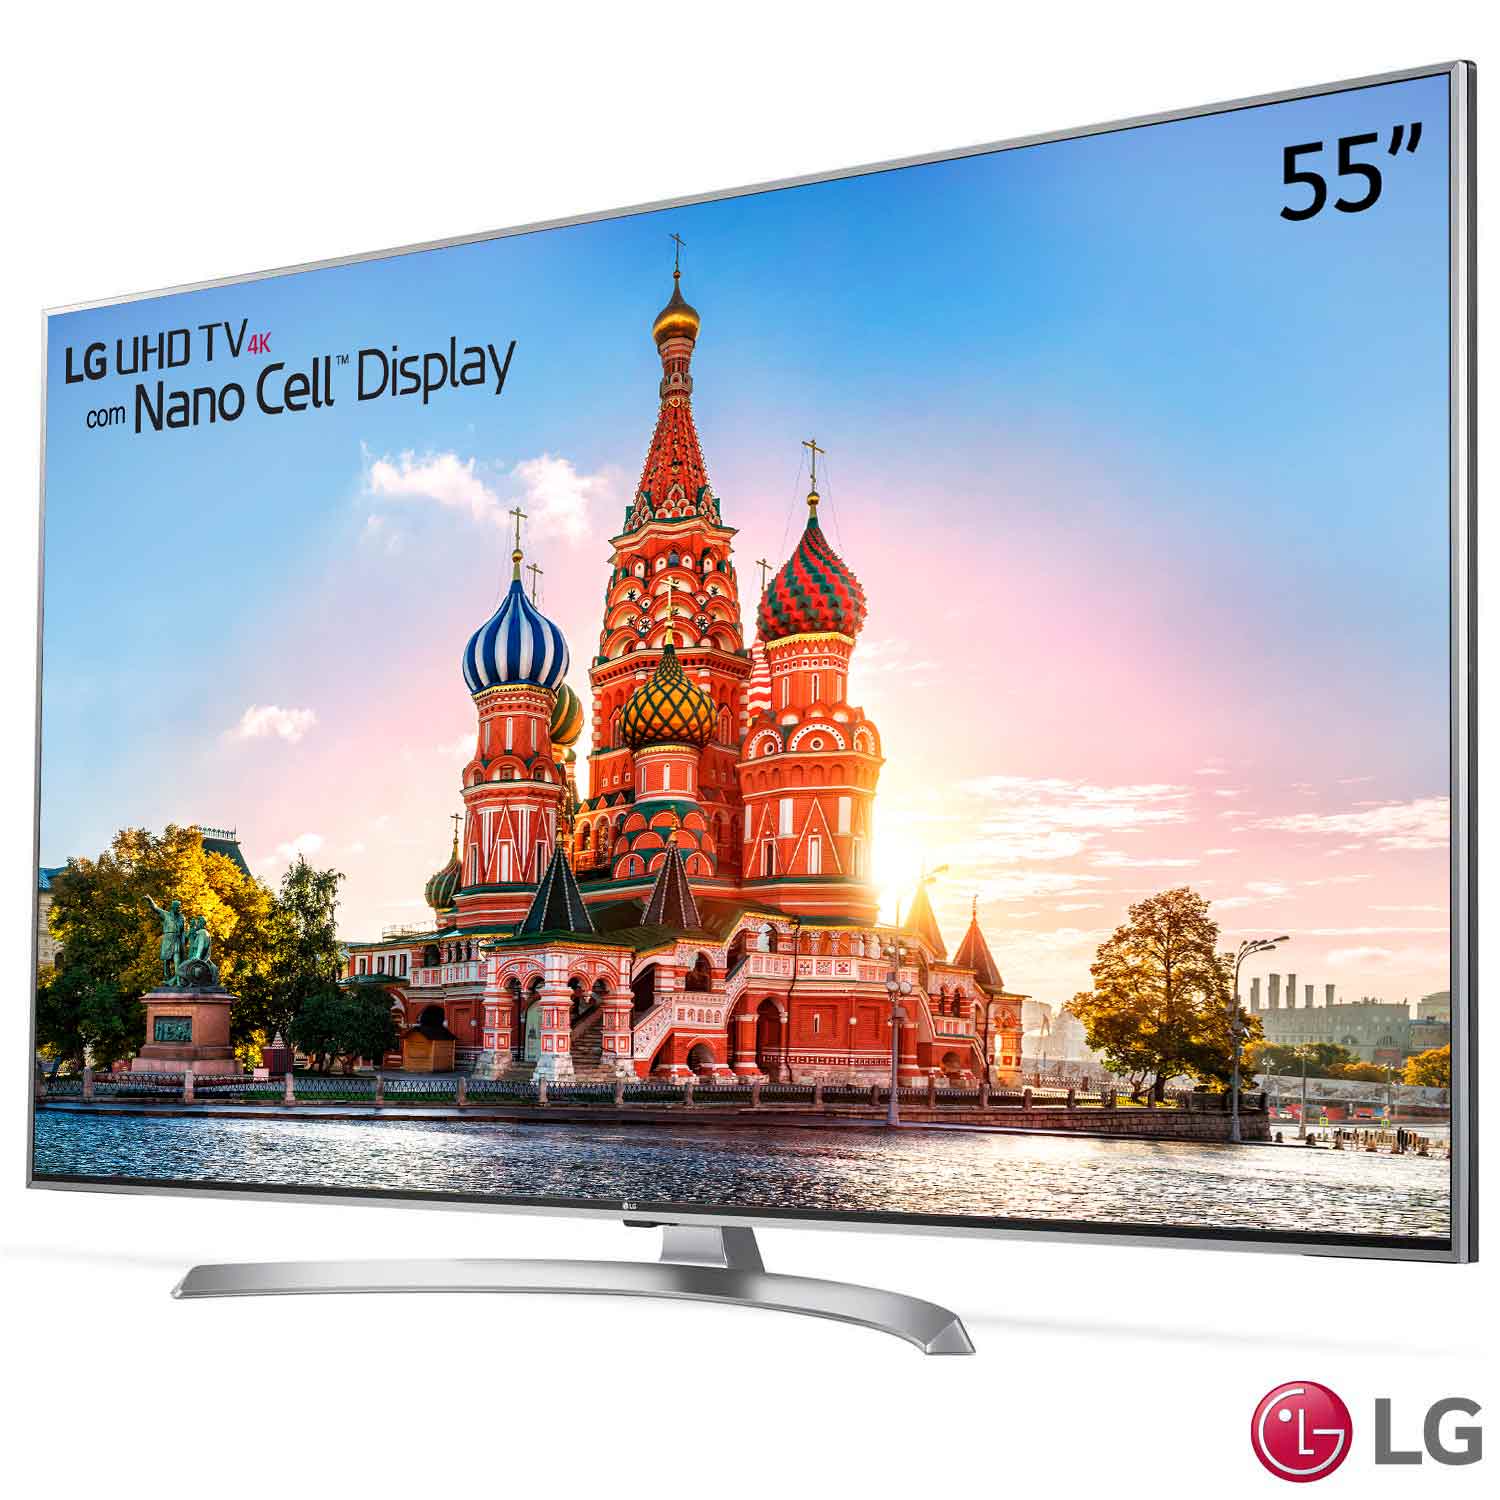 Smart TV 4K LG LED 55” Nano Cell 5UJ7500 com R$ 1200 OFF - LG 55UJ7500 PRD 1500 2